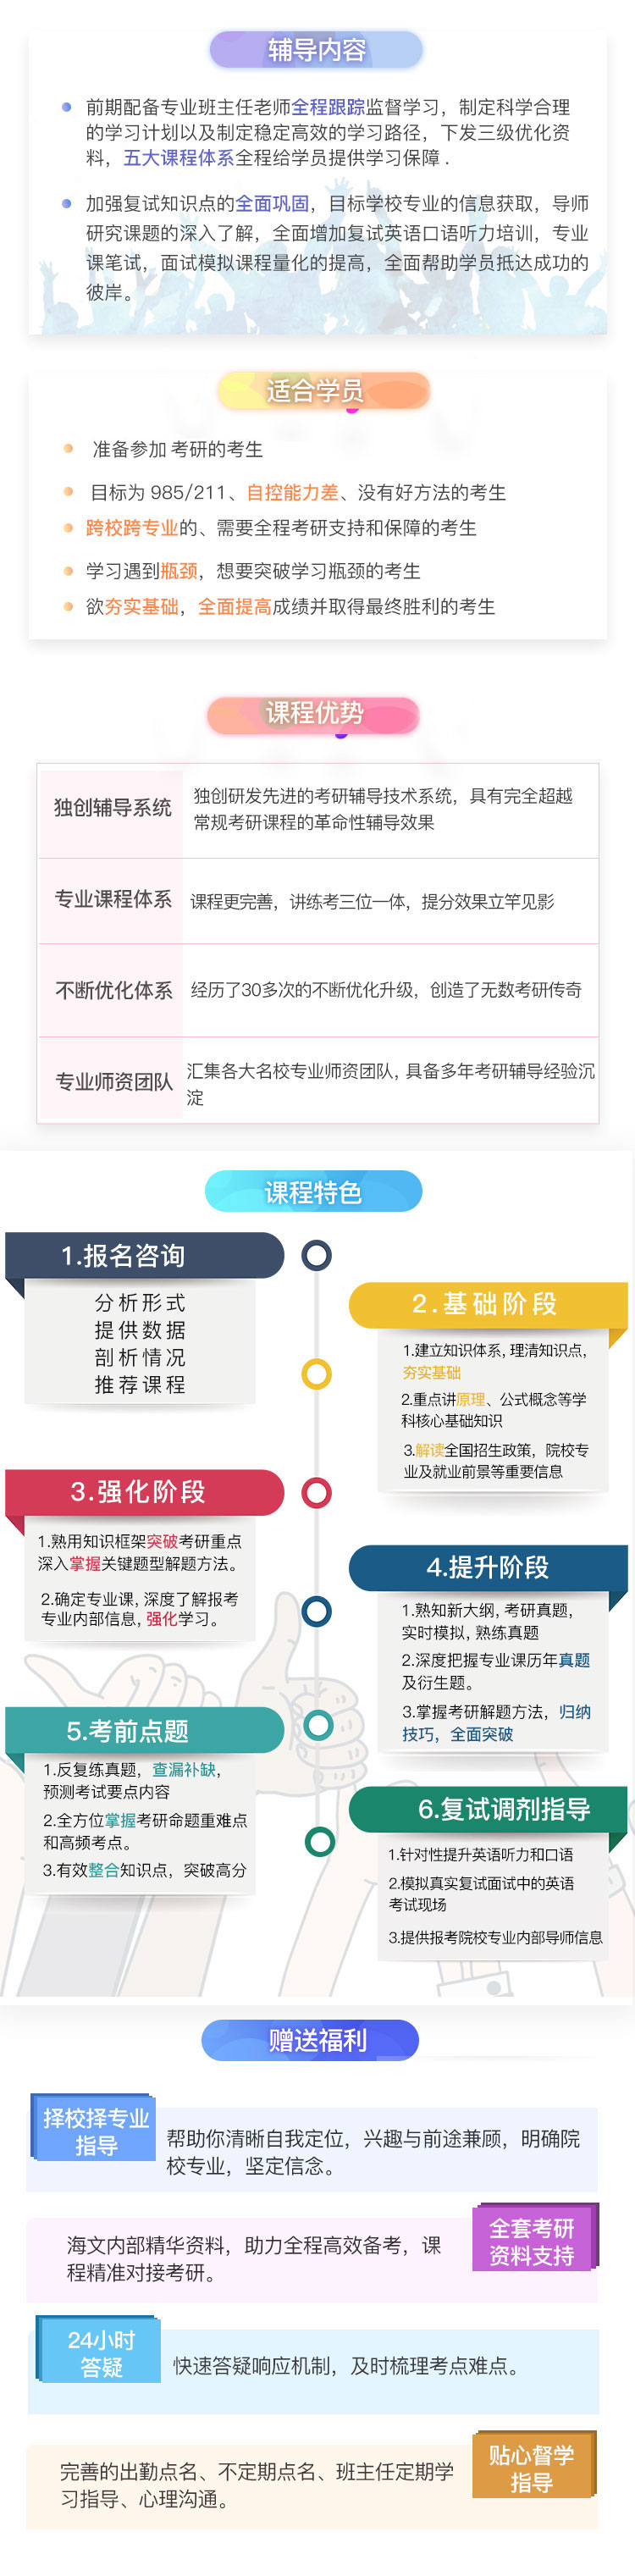 四川法学考研全年特训营课程（课程图示）